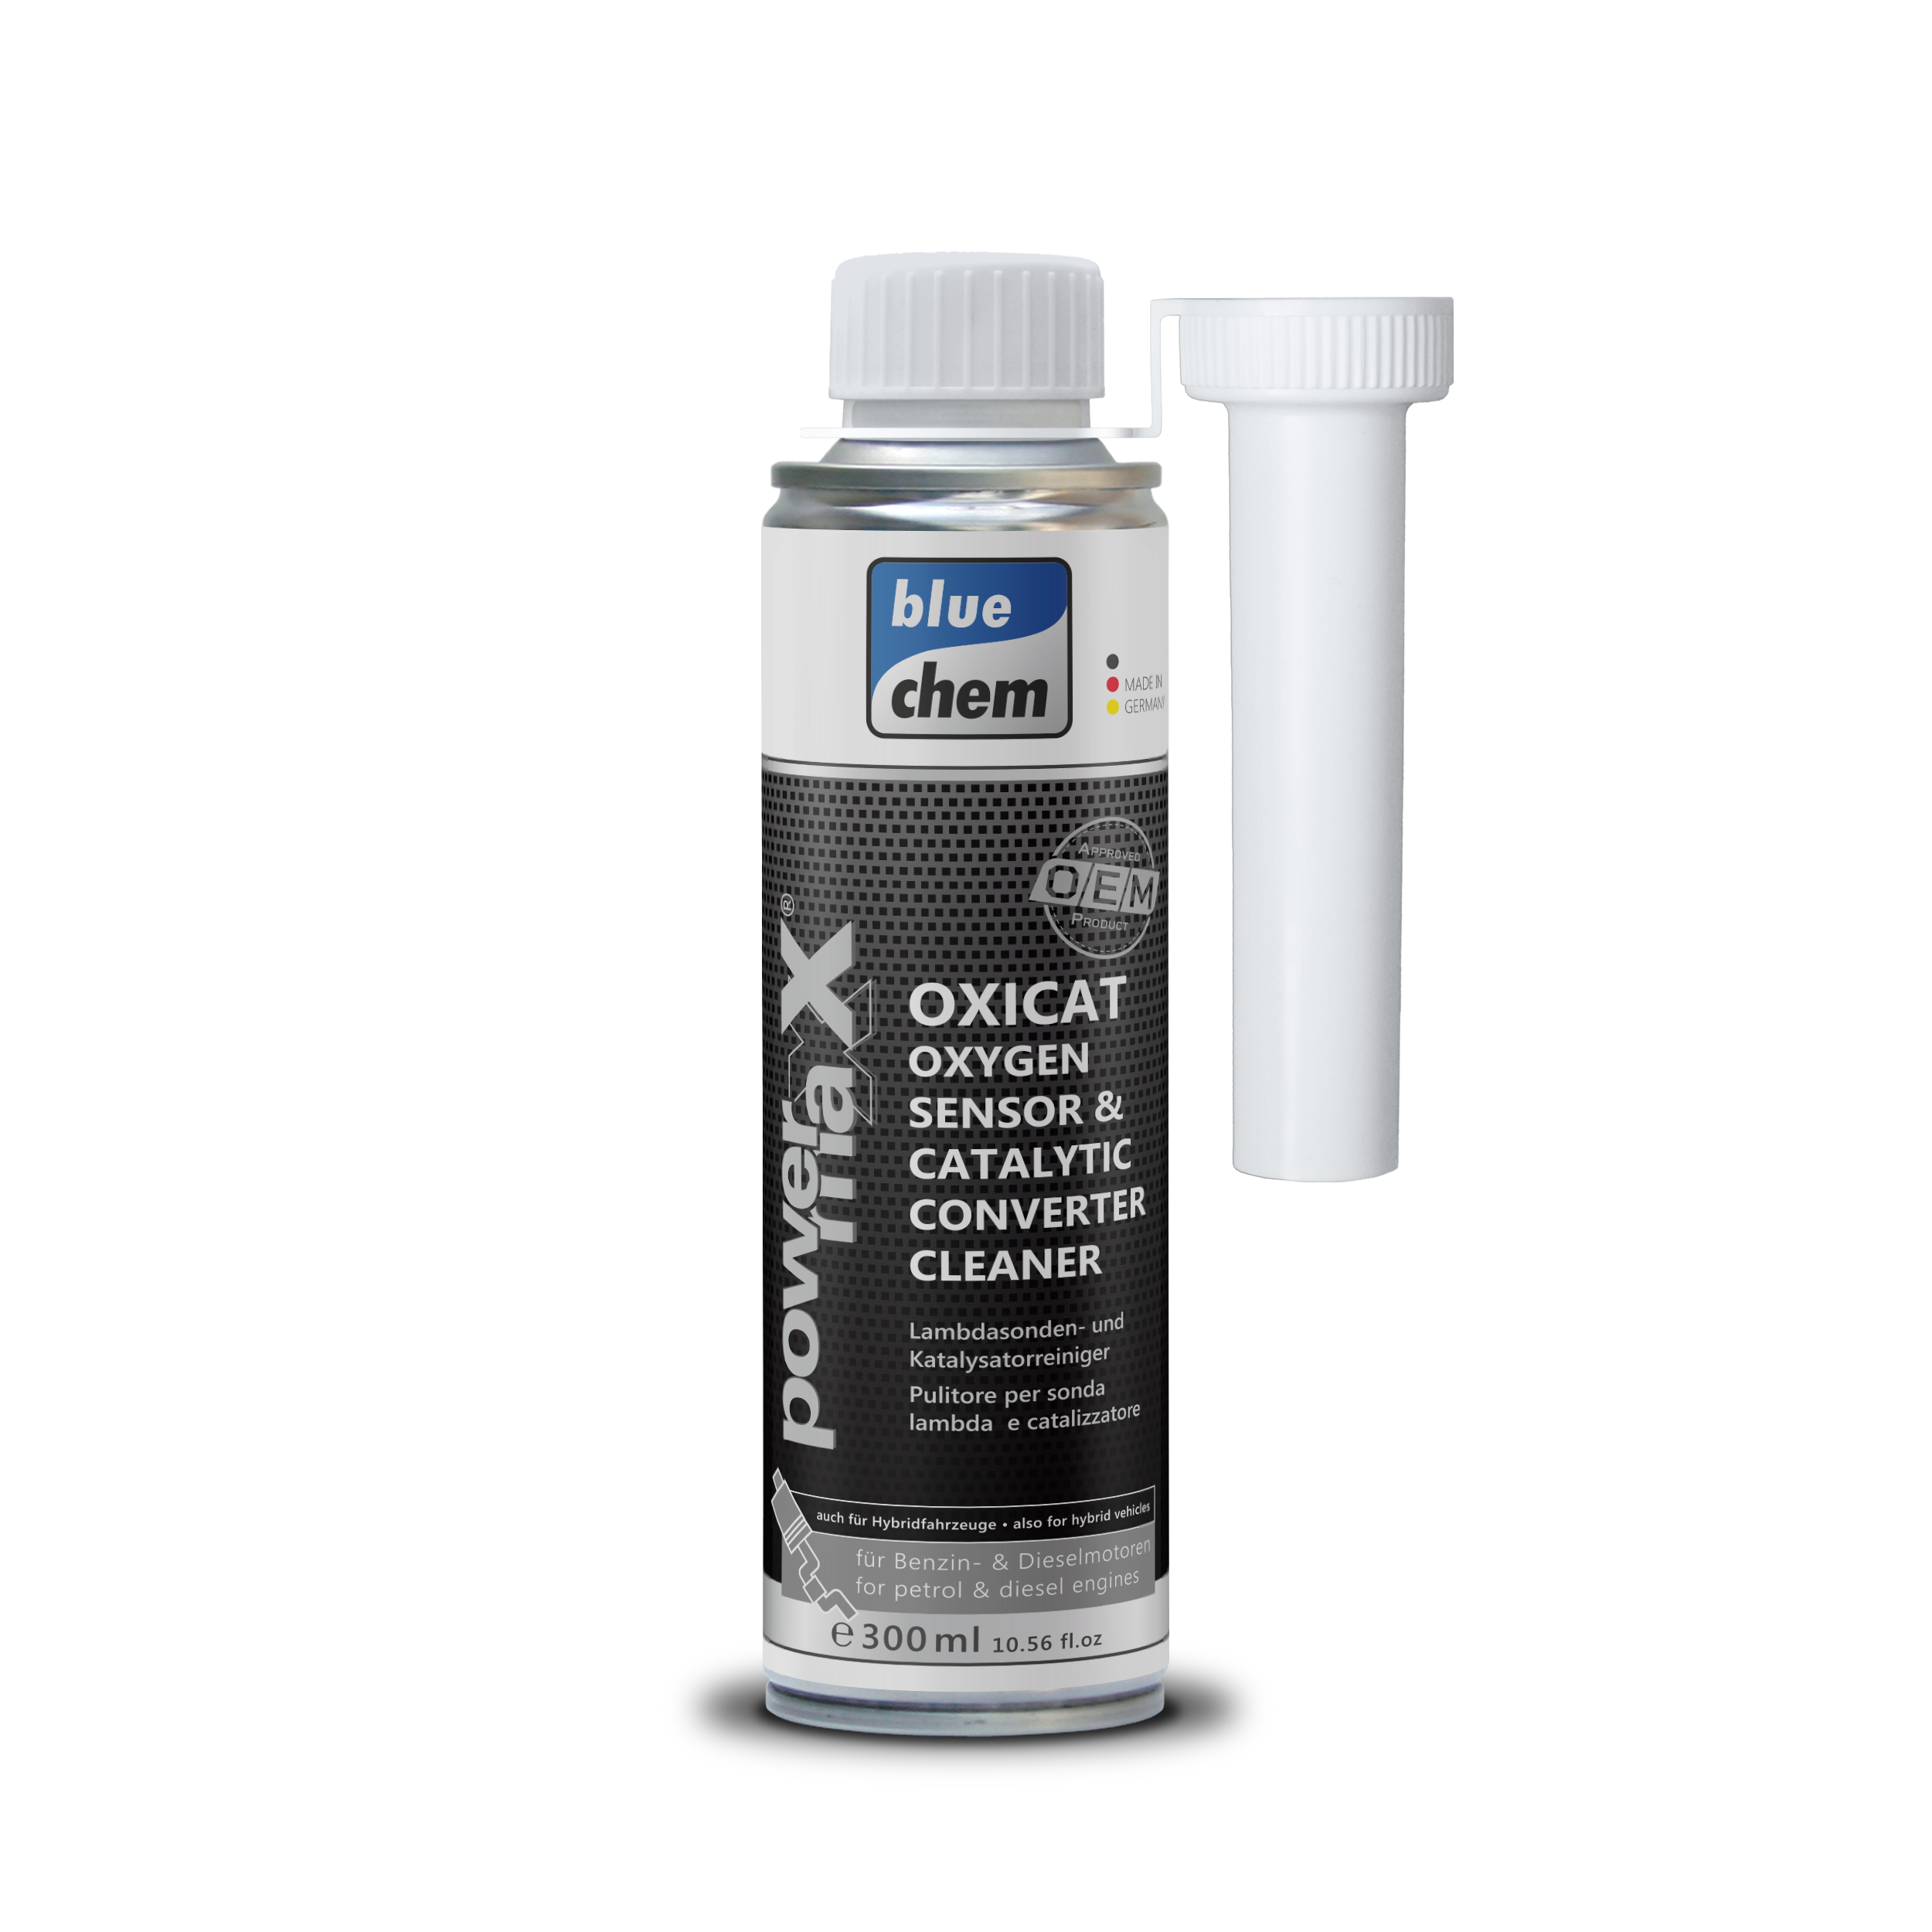 OXICAT Oxygen Sensor Catalytic Converter Cleaner